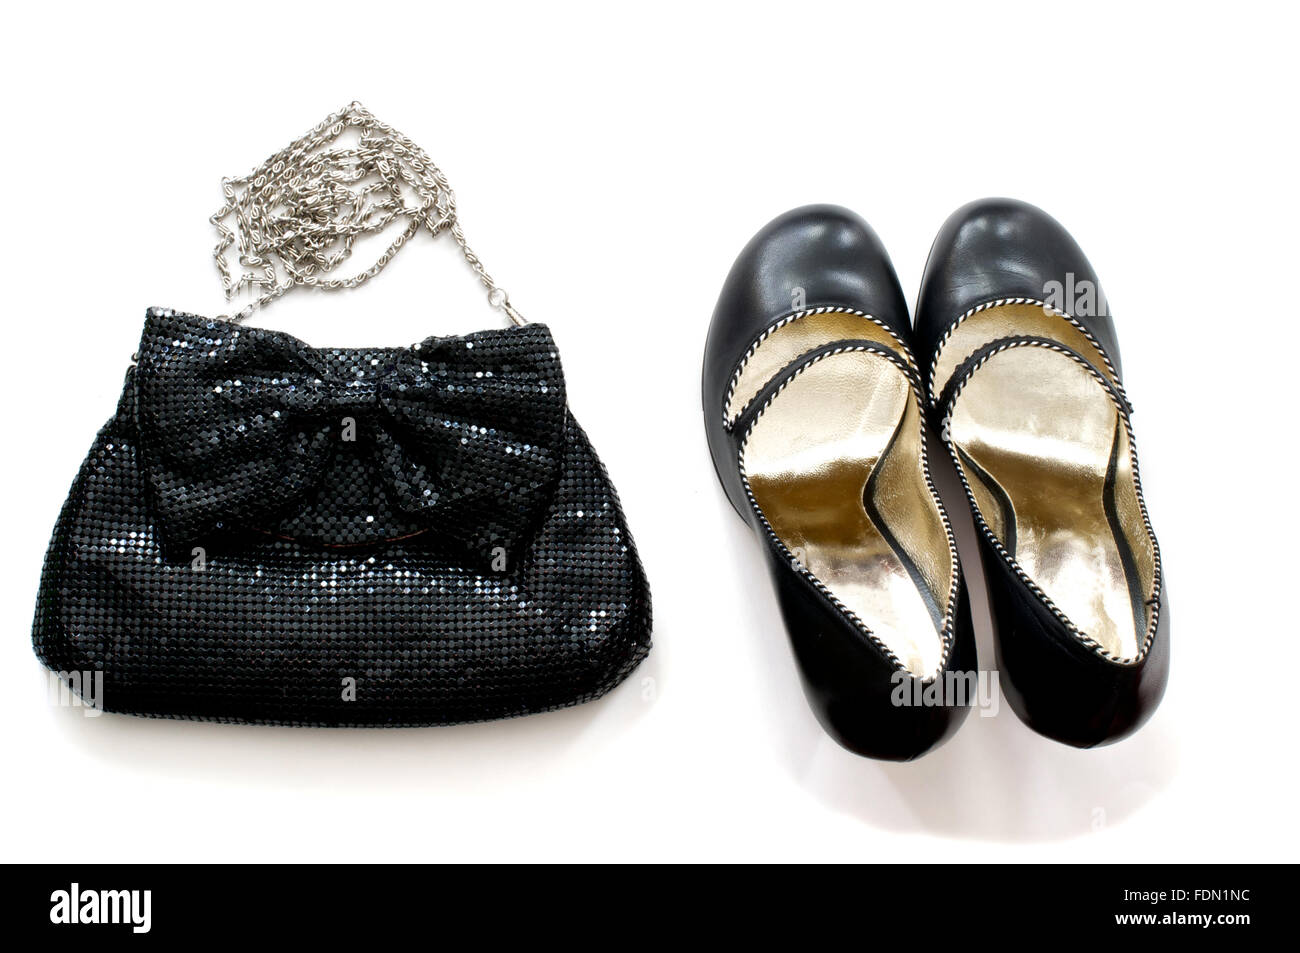 Isolierte schwarze Clutch-Tasche mit high Heels Schuhe in weiß Stockfoto